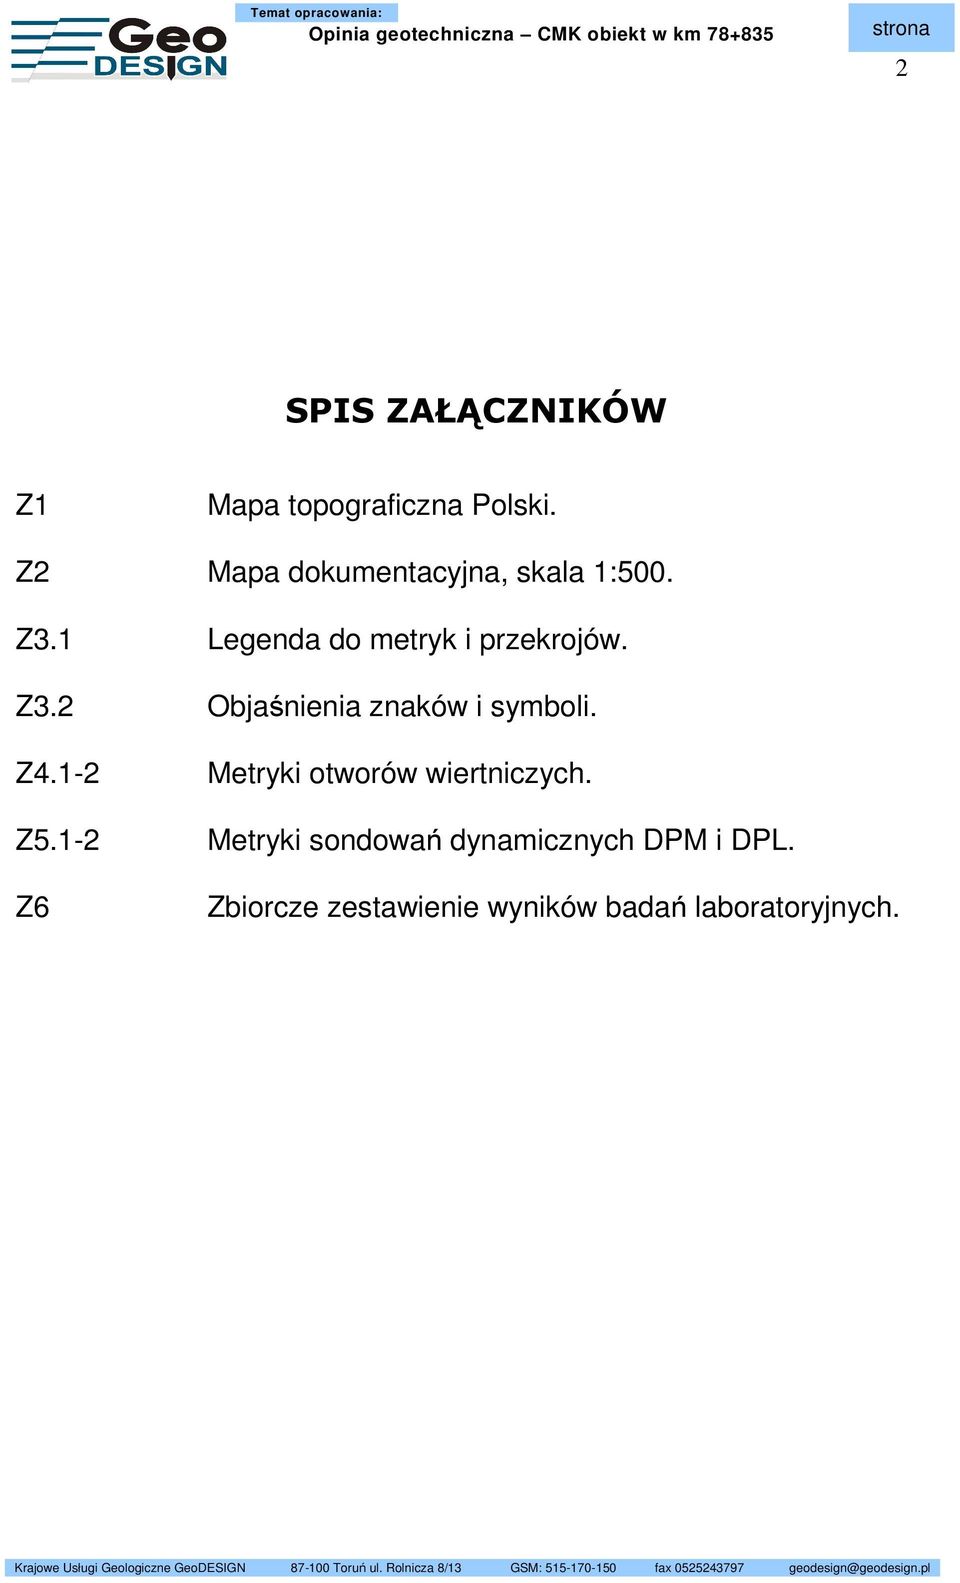 Z4.1-2 Z5.1-2 Z6 Z7 Metryki otworów wiertniczych.